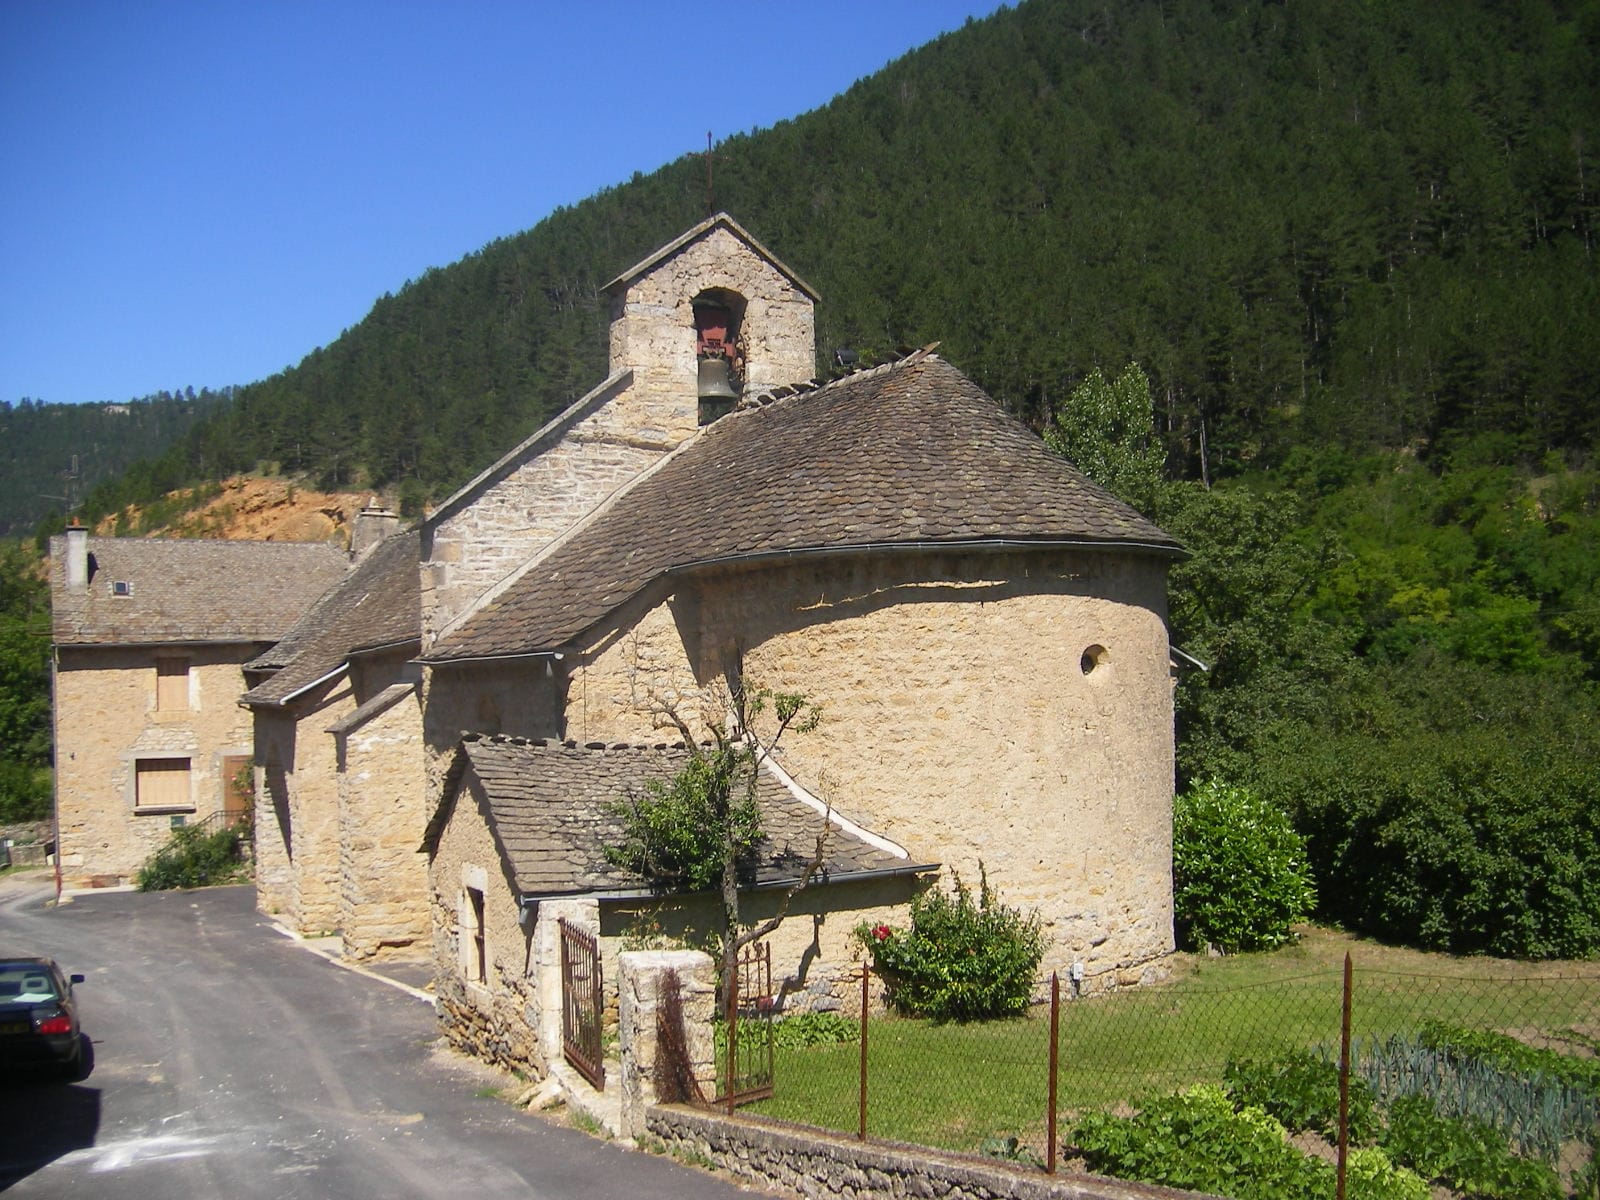 Balsièges (Image Wikipedia à supprimer)